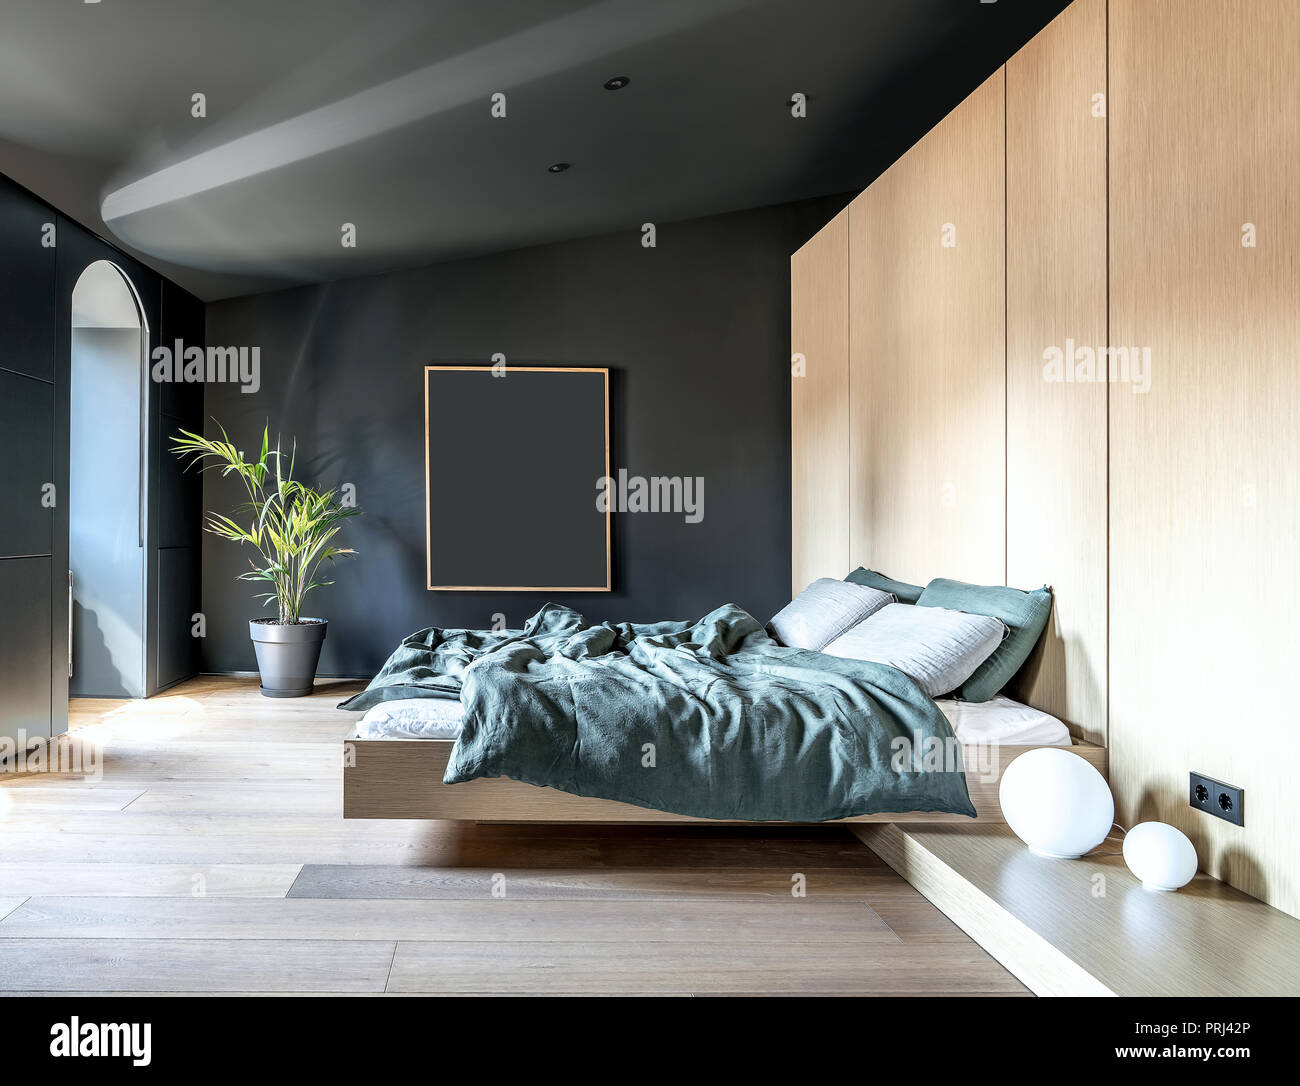 Modernes Schlafzimmer mit dunklen Wänden und einem Parkett auf dem Fußboden. Es gibt ein Bett mit bunten Handtücher, Schließfächer, weisse Kugel Lampen, grüne Pflanze in einen Topf, Stockfoto